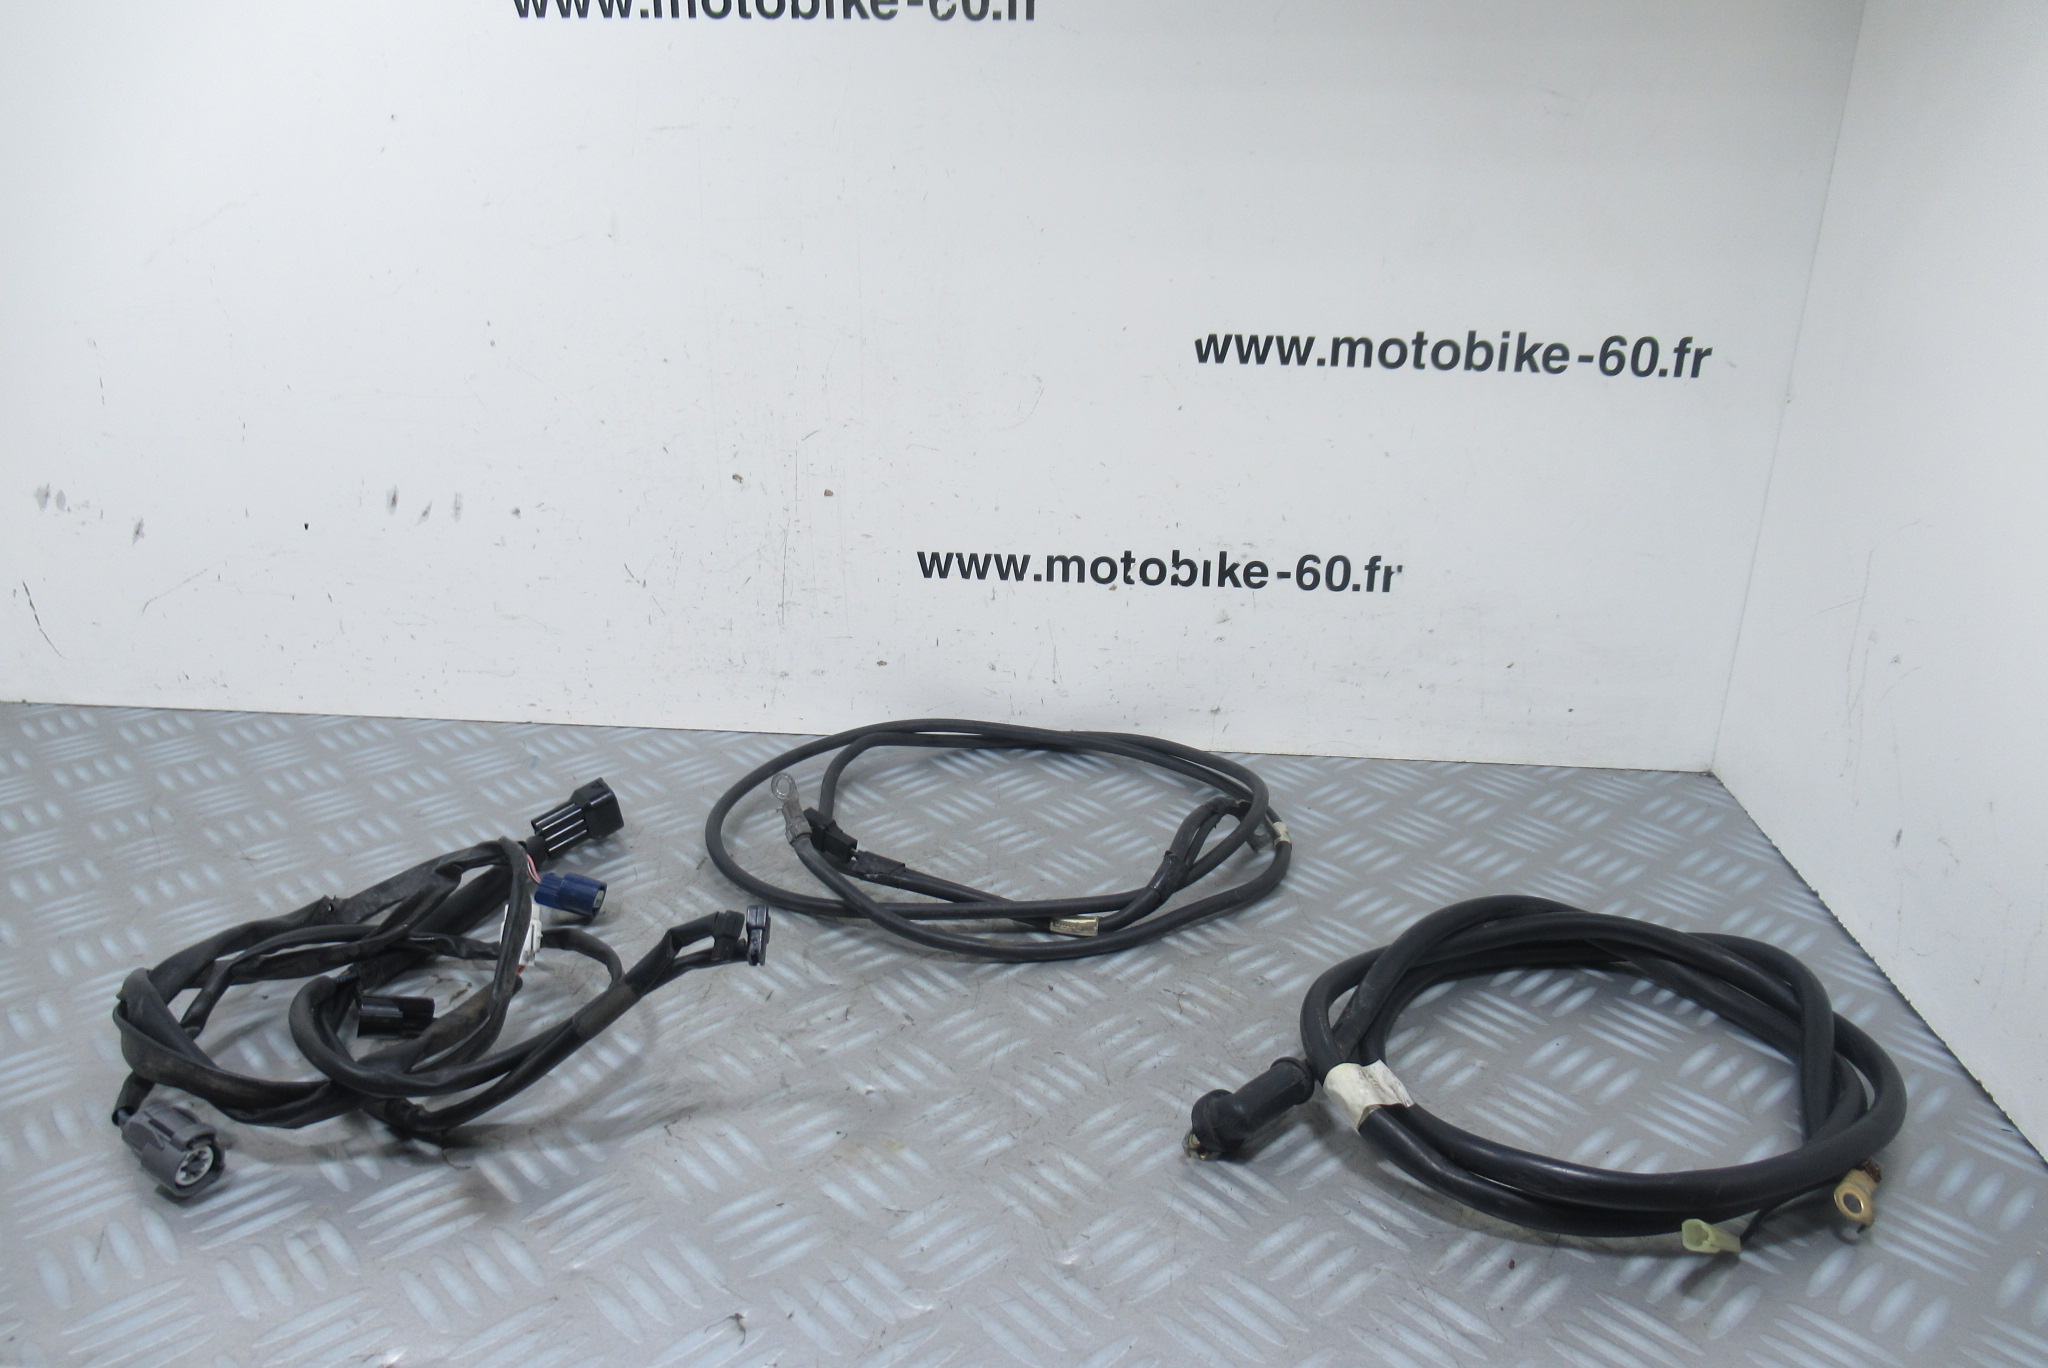 Cable + faisceau annexe Suzuki Burgman 400 4t